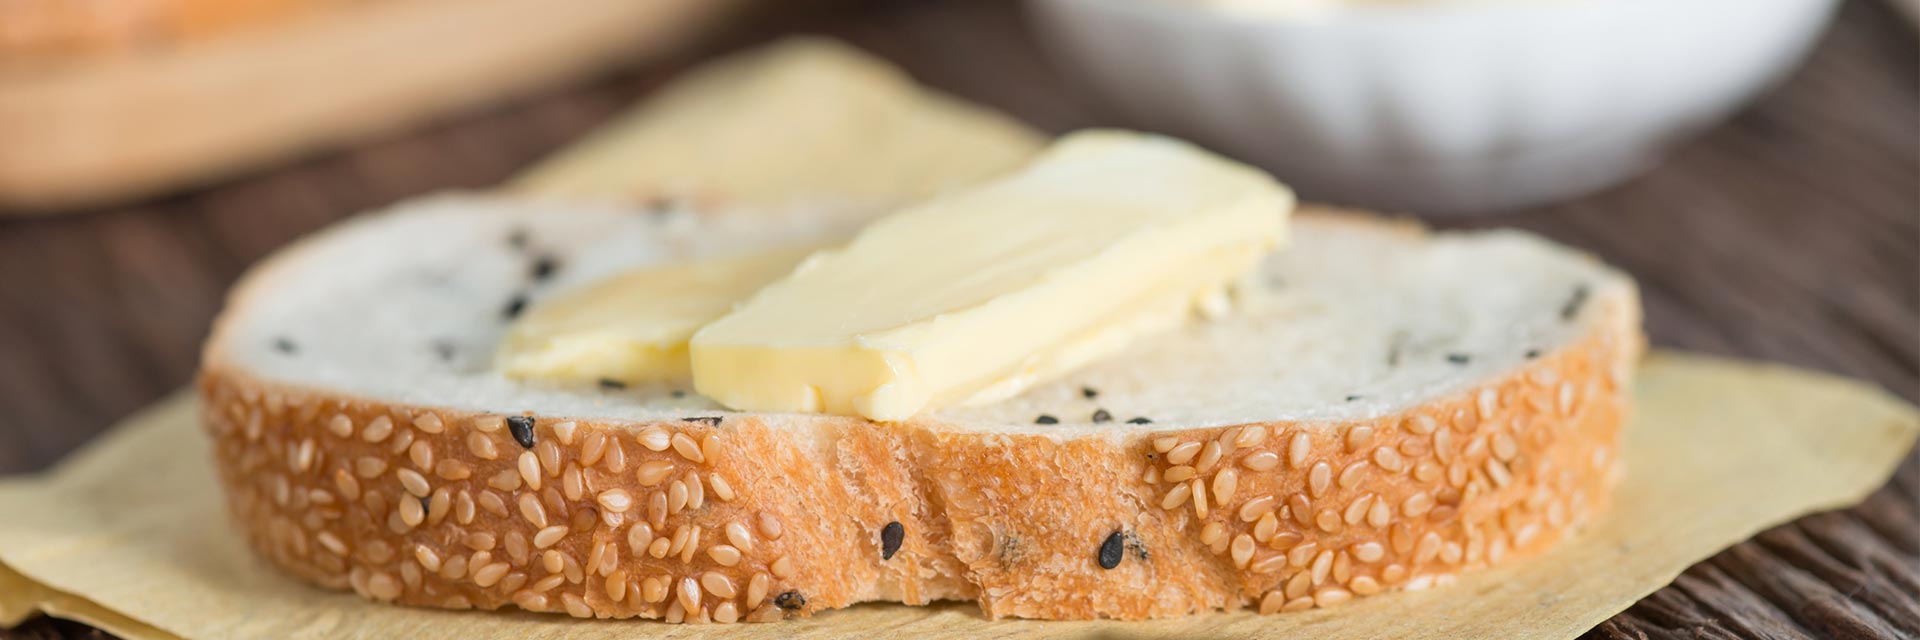 Seguramente ya conoces la margarina y la mantequilla, pero ¿sabes realmente cuales son sus diferencias? Infórmate más en nuestra página.